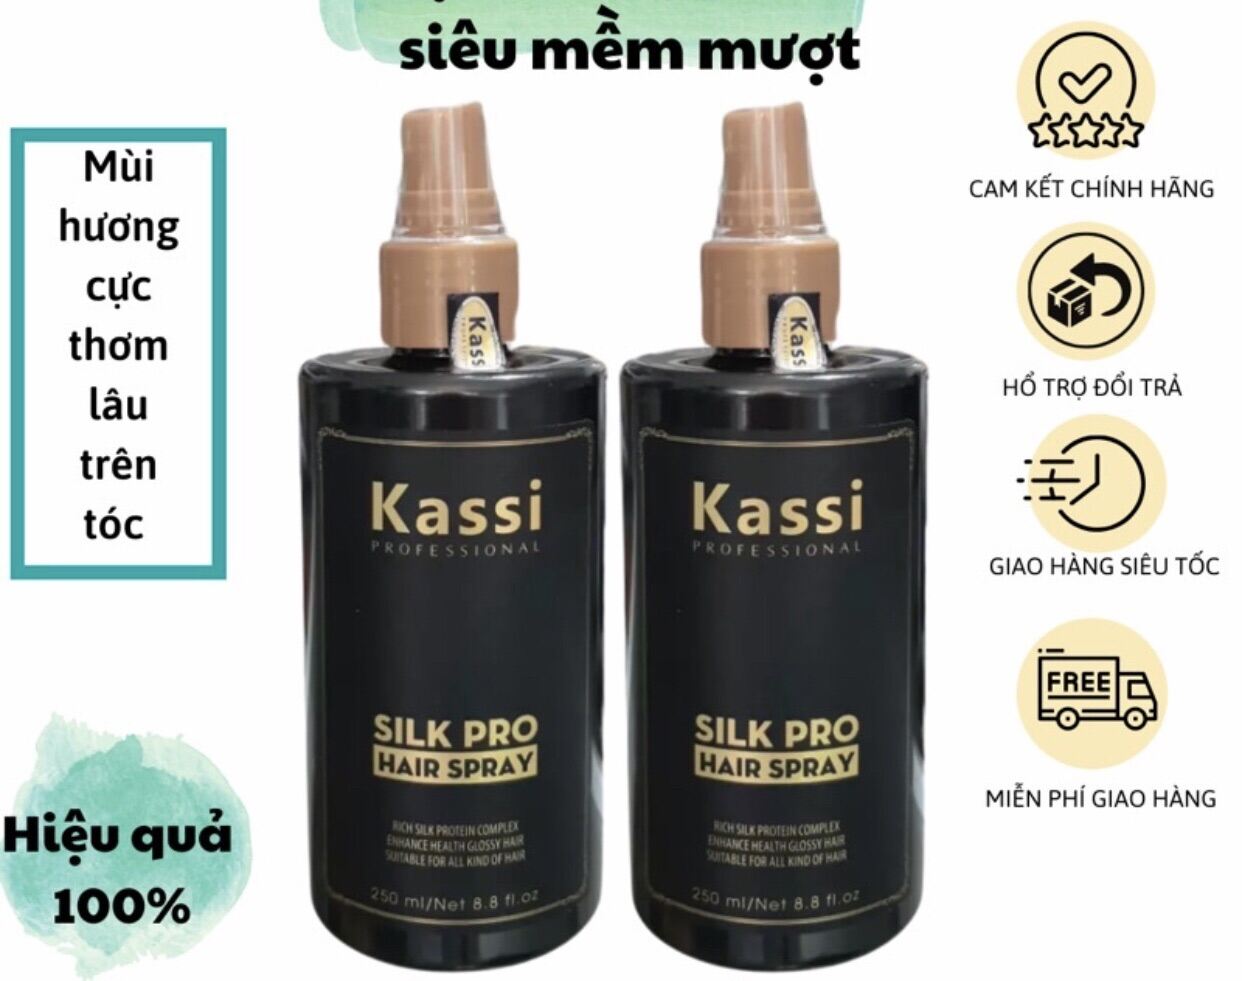 [ Chính Hãng ] Xịt dưỡng tóc khô xơ, hư tổn kassi Silk Pro Hair Spray 250ml - Sản phẩm chuyên dùng cho salon -  hương thơm nước hoa -  suôn mượt cho tóc khô sơ giá rẻ